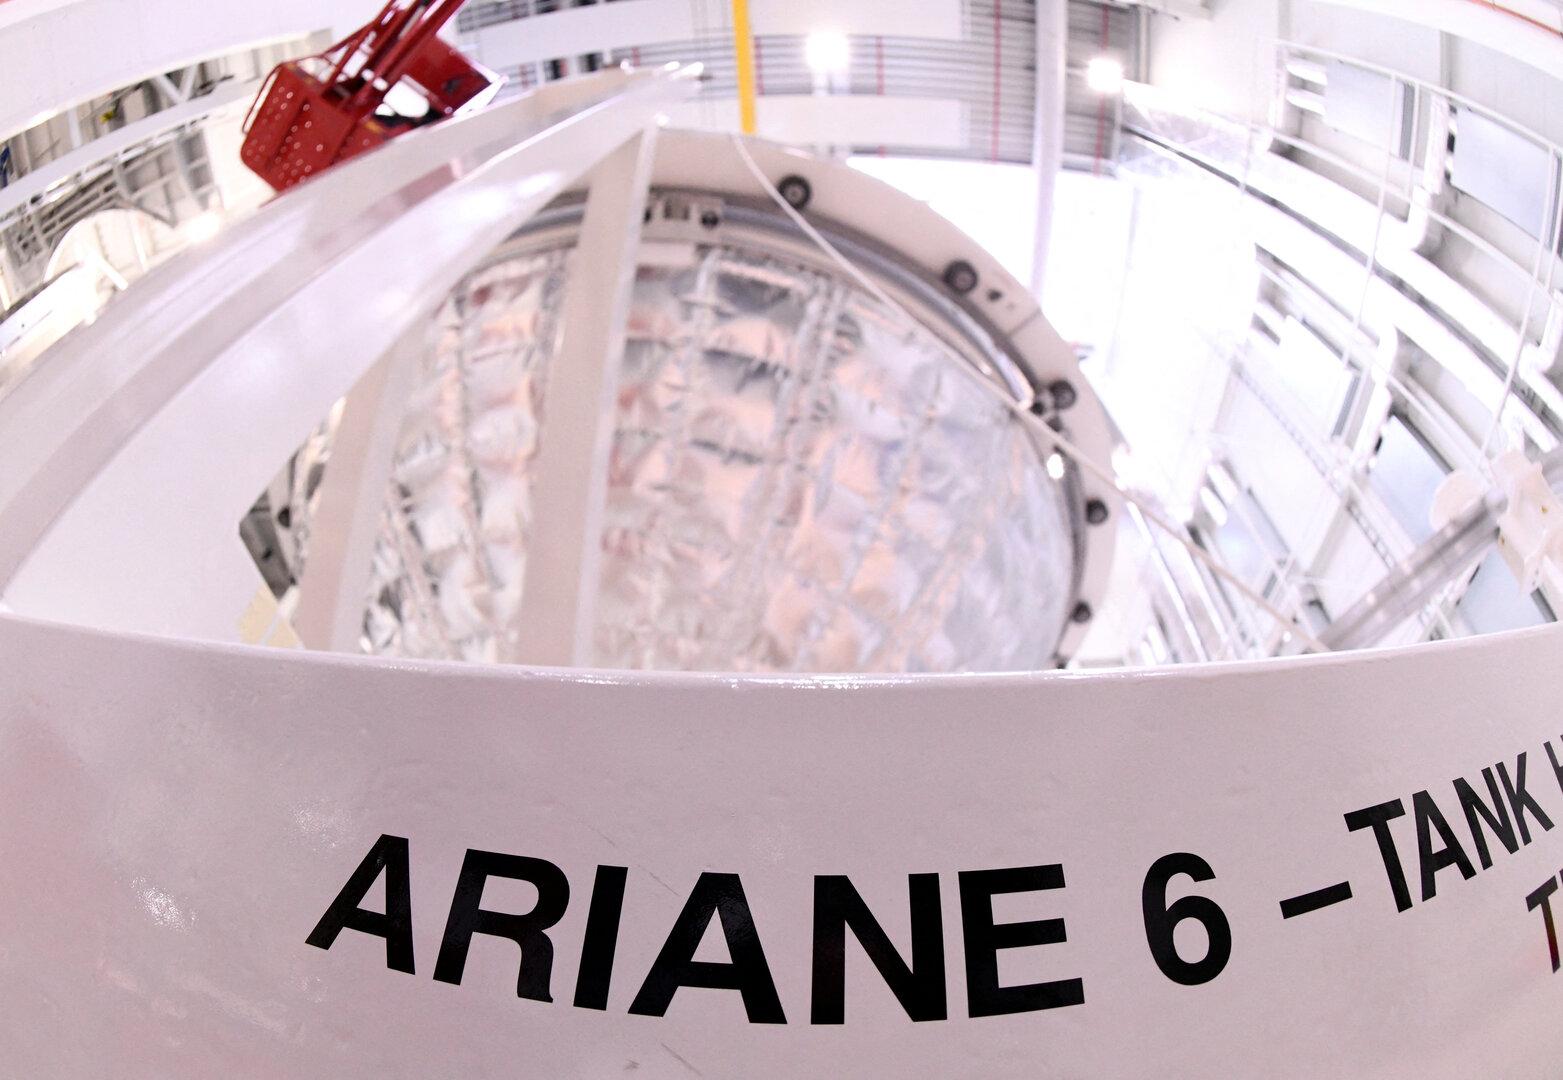 Großer Schritt für Europas Raumfahrt: Erstmals Ariane 6 im All